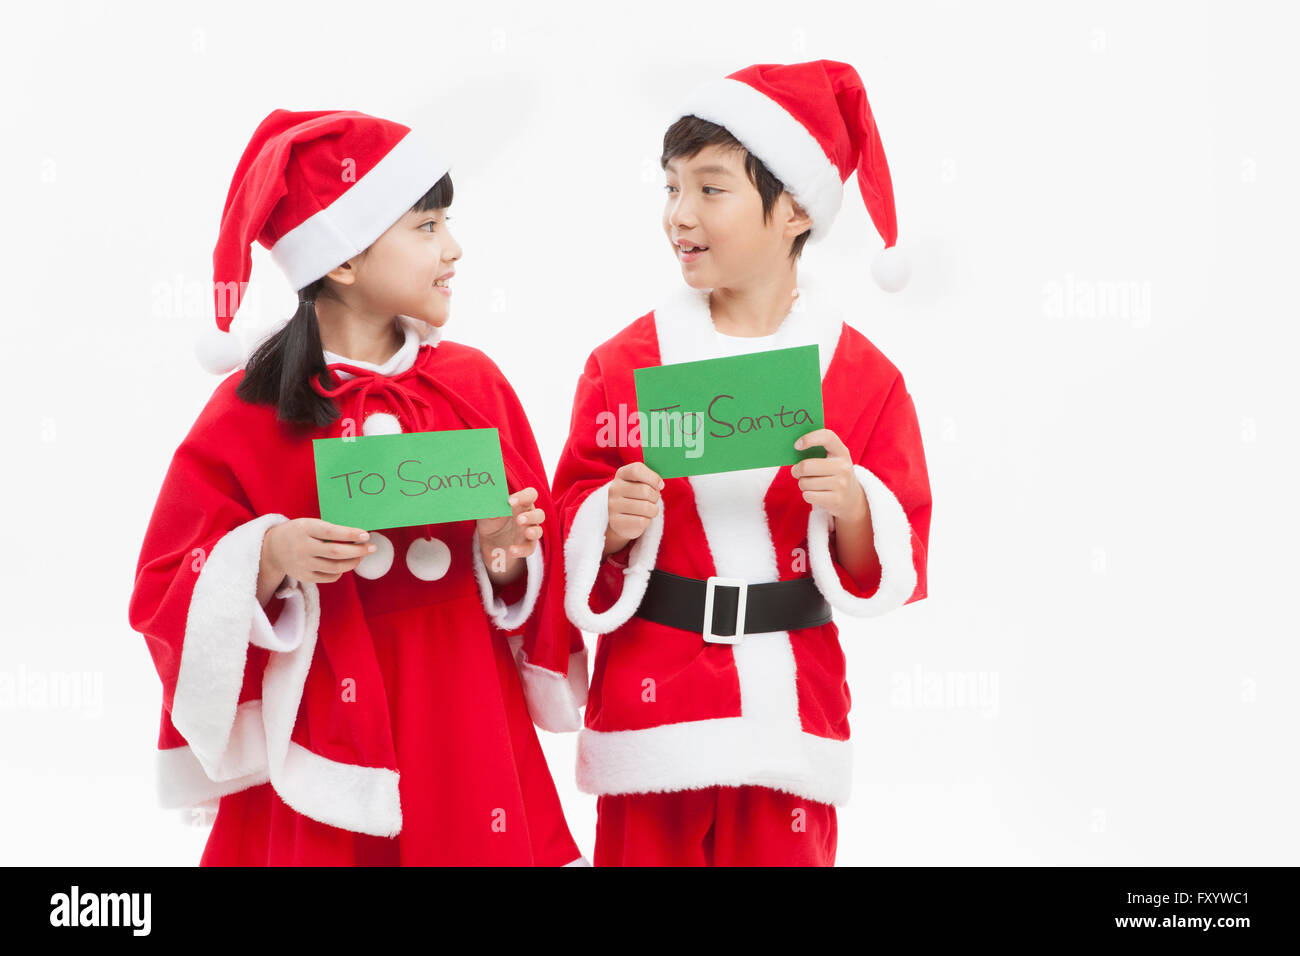 Vue latérale du smiling boy and girl in Santa's clothes holding cartes pour Santa face à face Banque D'Images